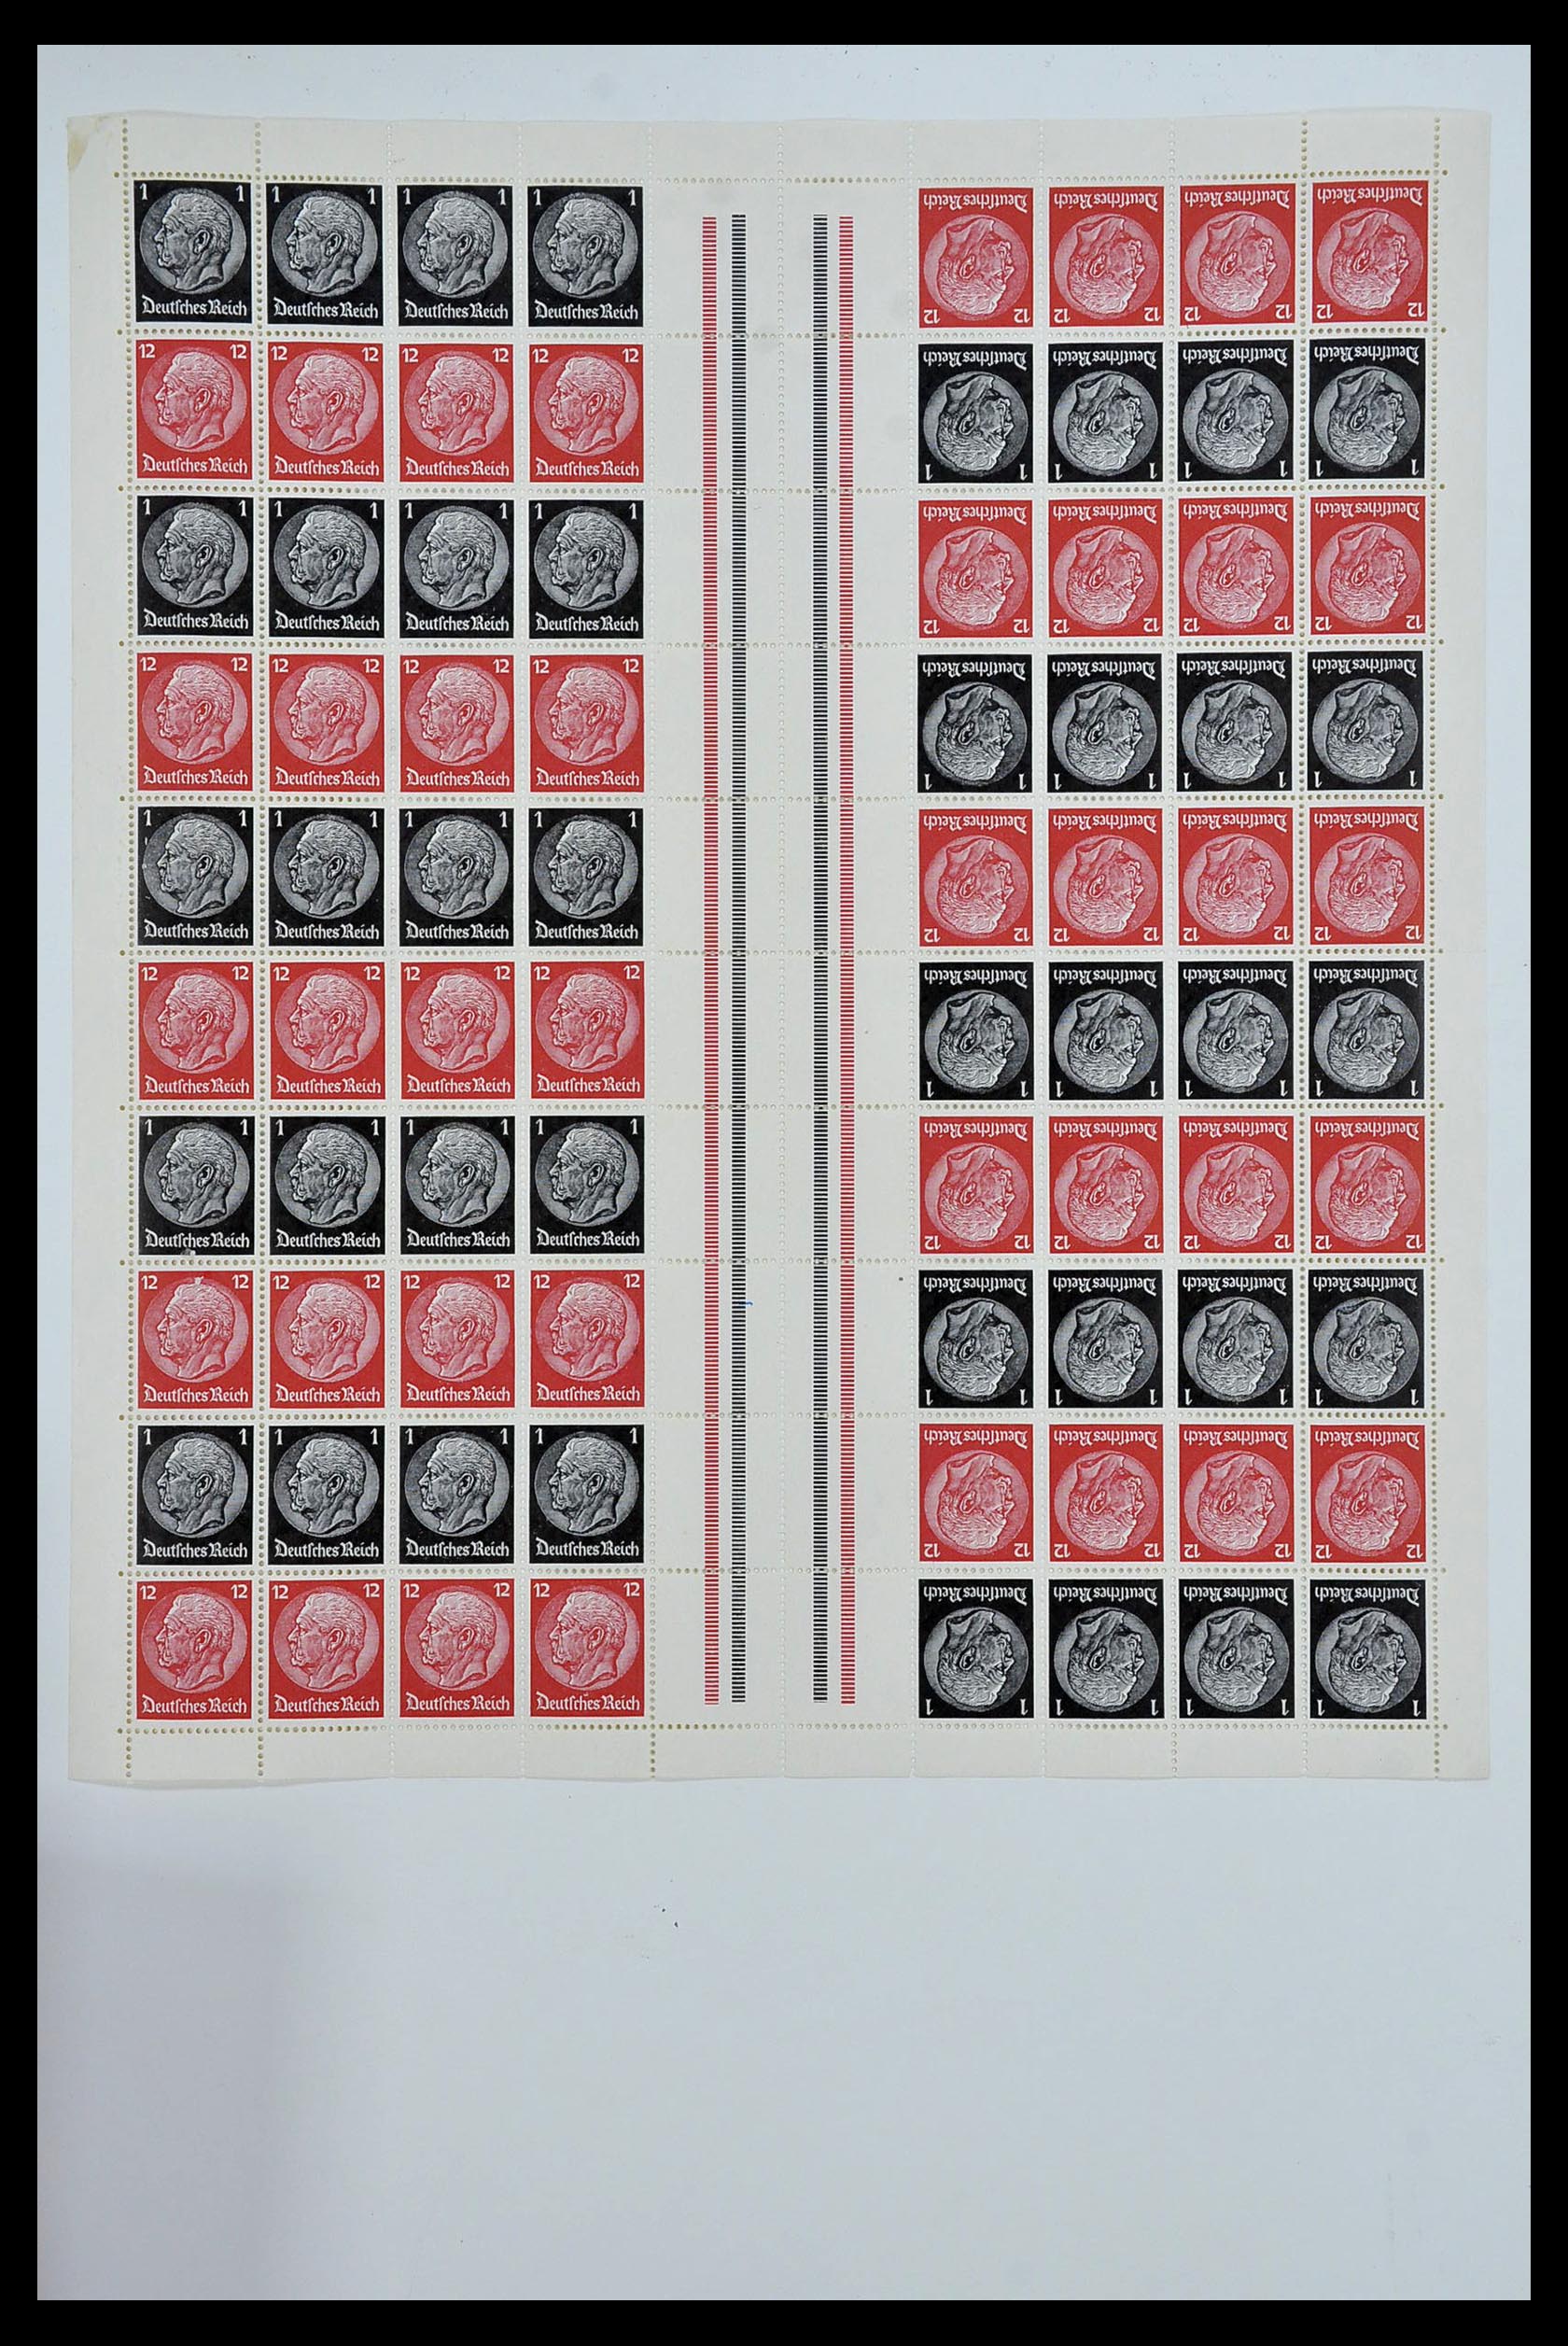 34164 023 - Stamp collection 34164 German Reich Markenheftchenbogen 1933-1942.